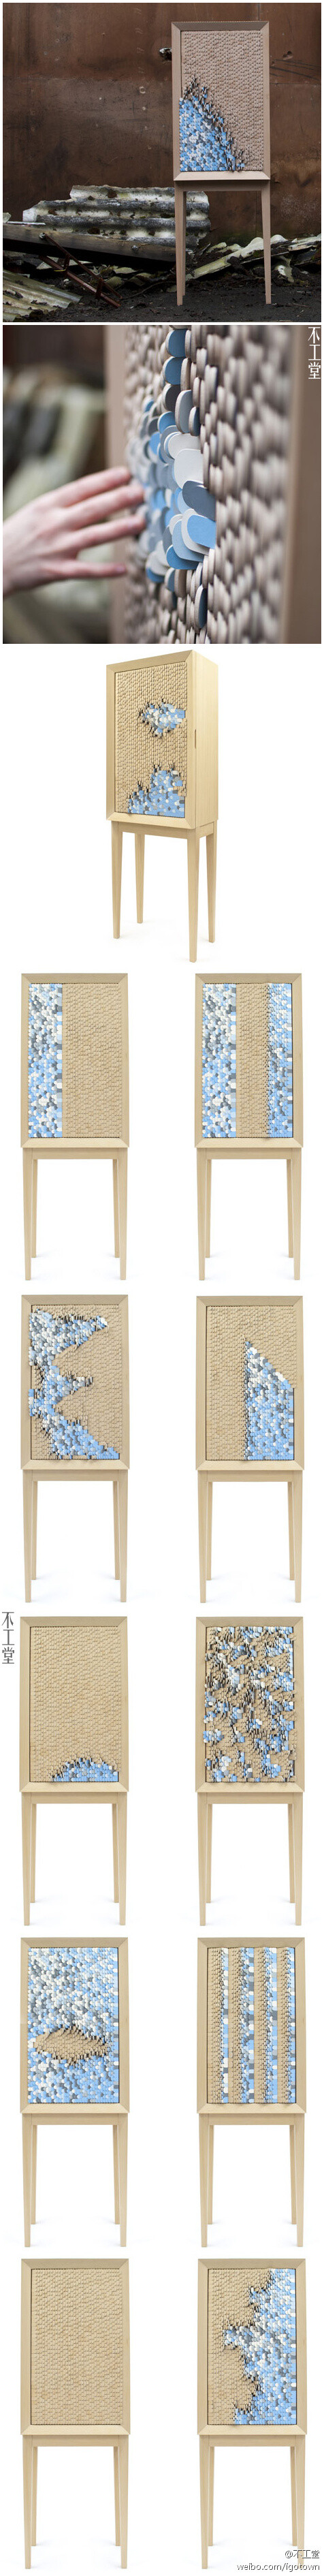 瑞典设计师Jenny Ekdahl设计了这款名为Dear Disaster的柜子，上面安置了四千片可翻转的木片，木片一面保持本色，另一面则被漆成蓝、白以及灰色，翻转木片，就仿佛海浪拂过沙滩一样。据说设计者初衷是为抚慰自然灾害中的幸存者，虽然不清楚其原理，不过这柜子还是蛮漂亮的。